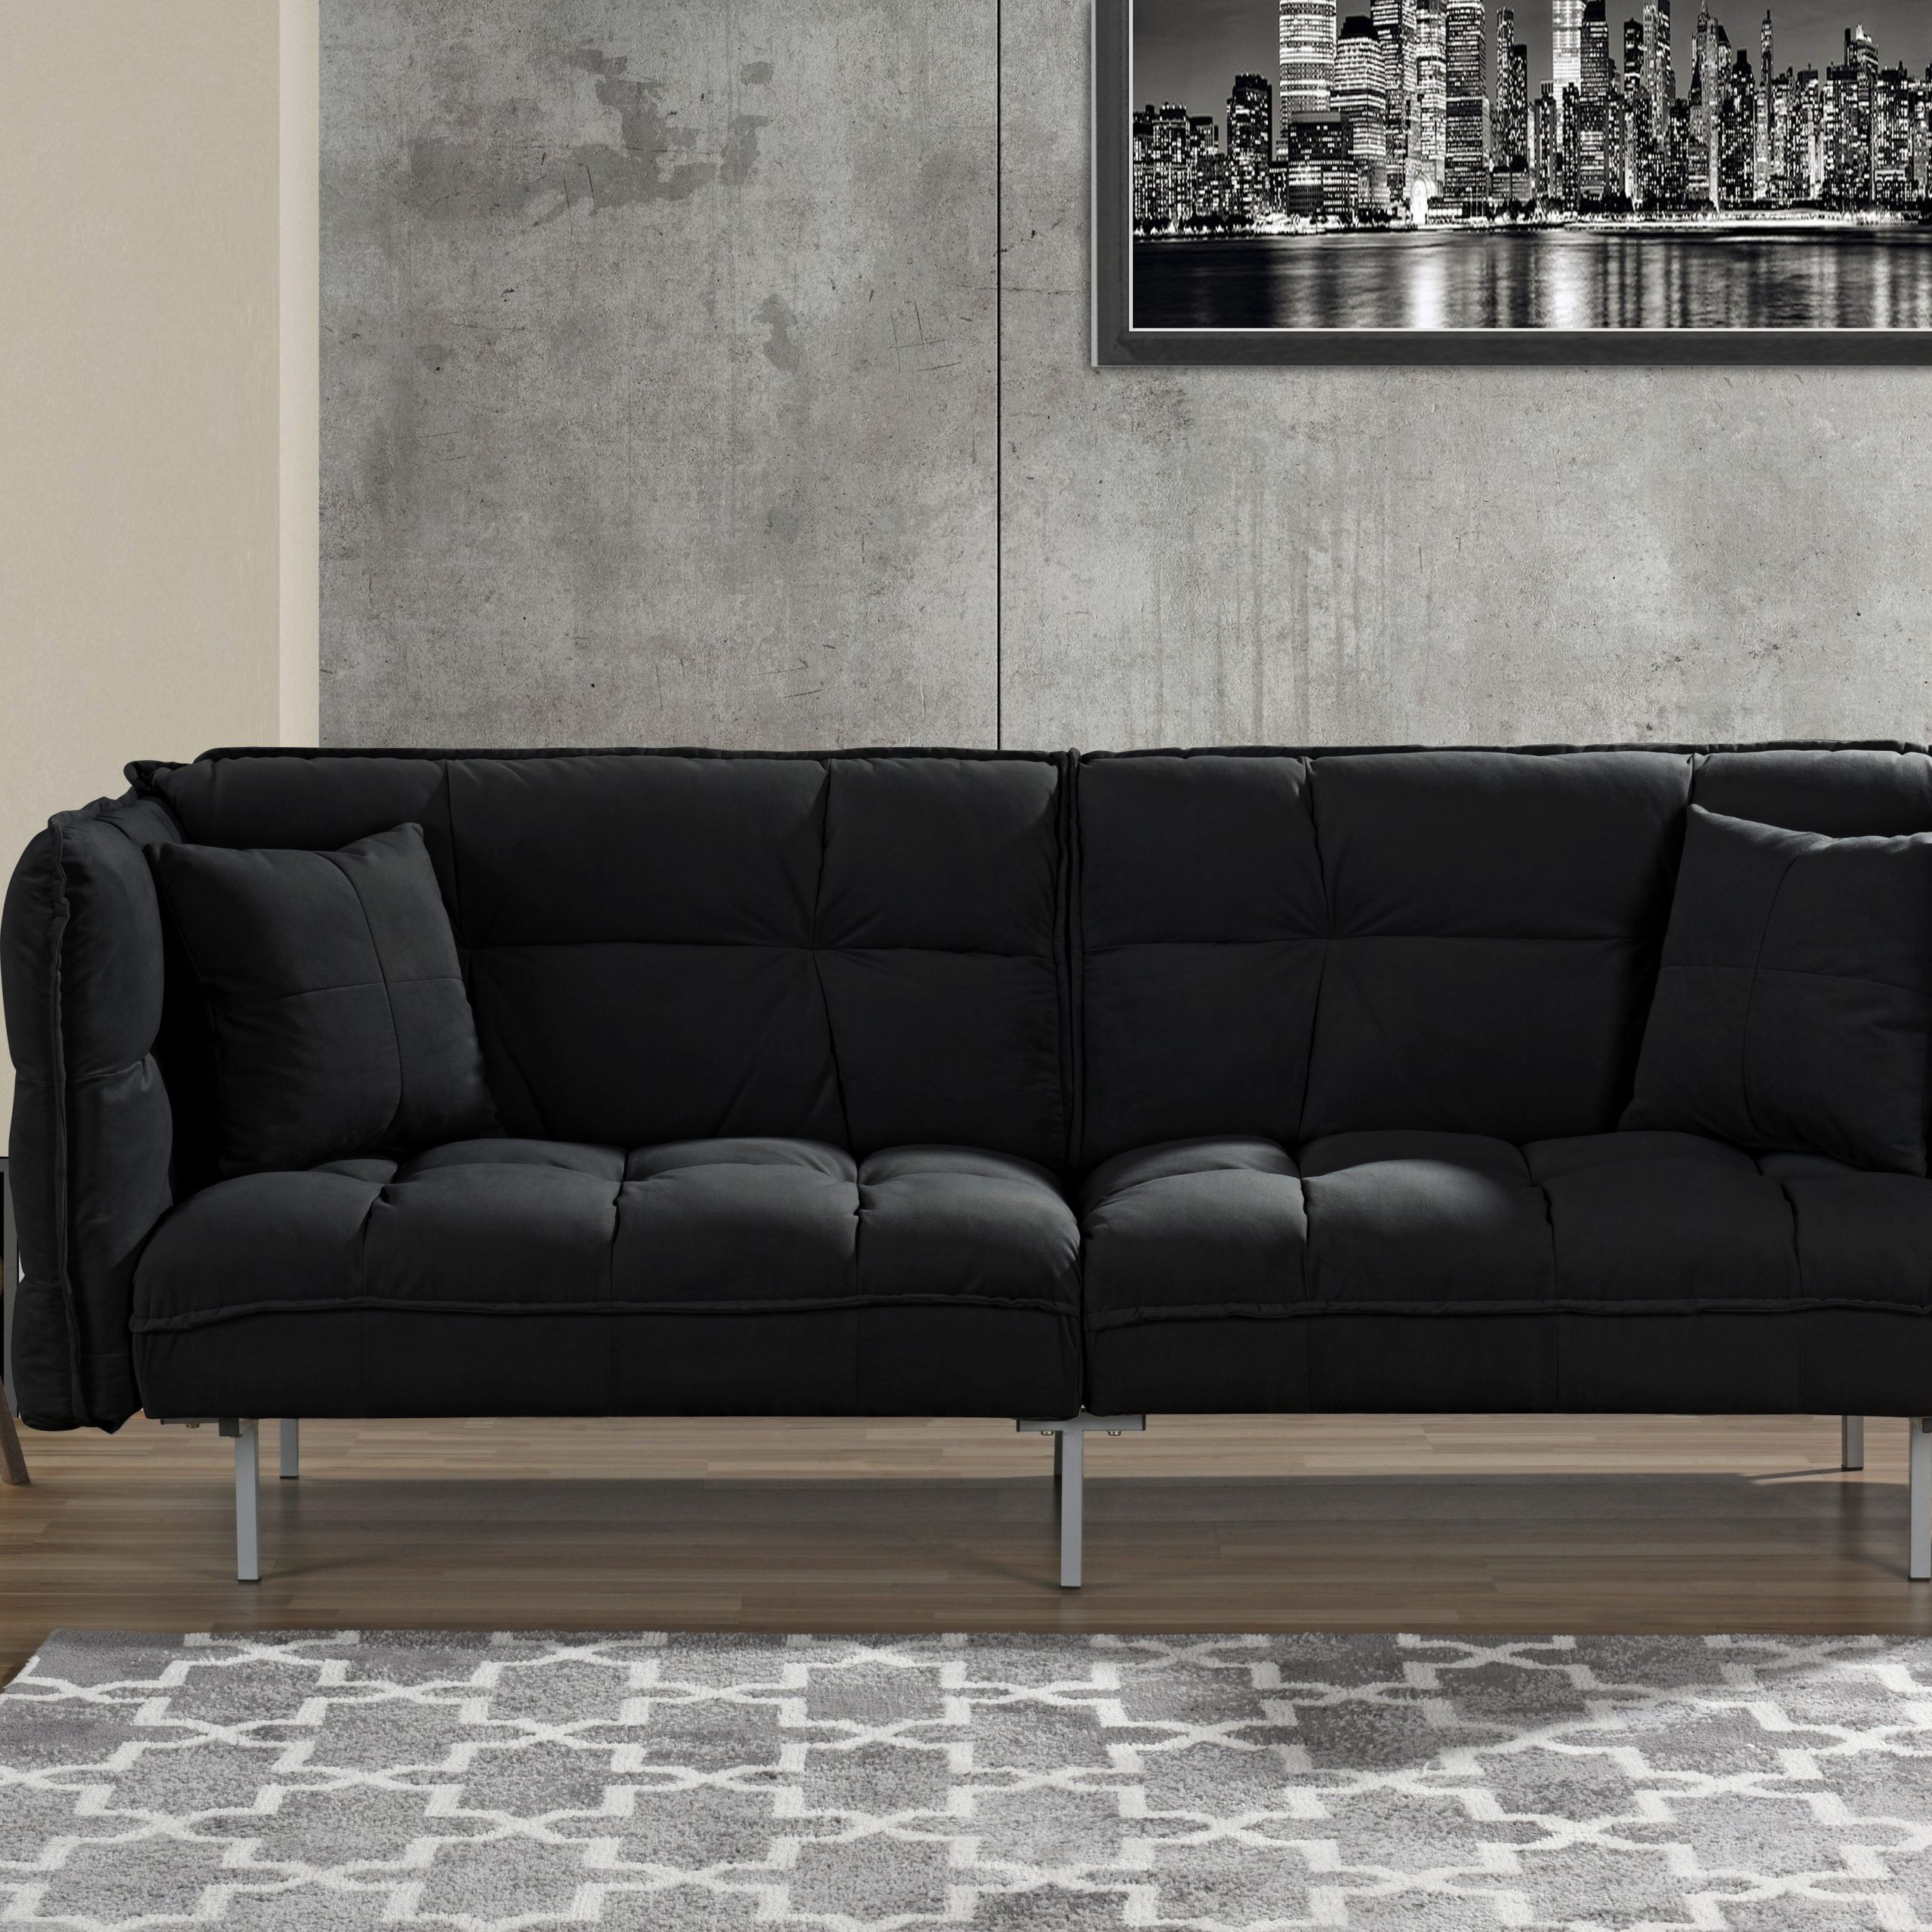 Plush Tufted Velvet Sleeper Sofa, Black – Walmart Intended For 2 Seater Black Velvet Sofa Beds (Gallery 10 of 20)